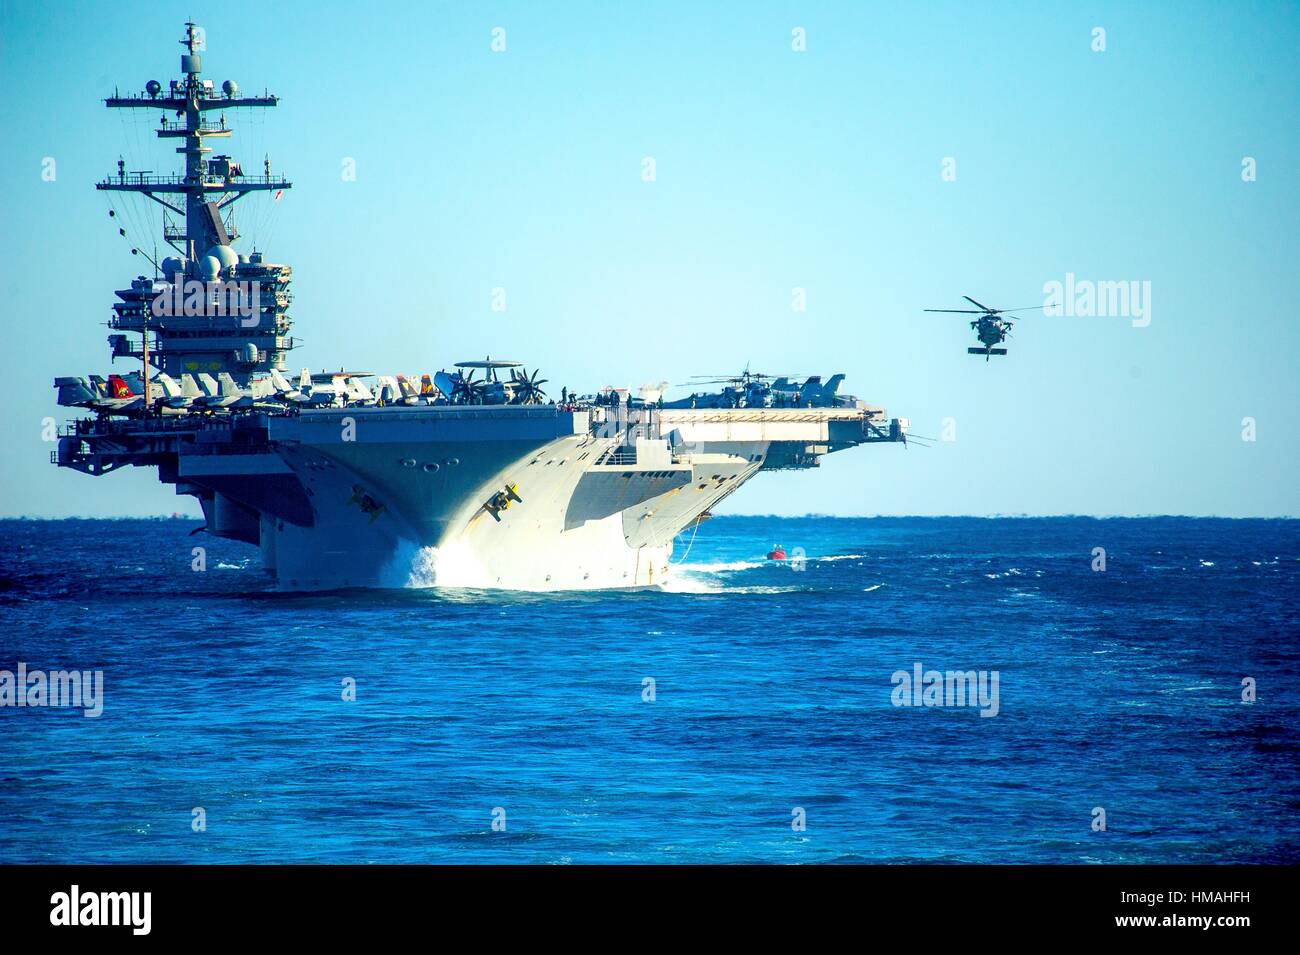 Océano Atlántico (dec. 13, 2013) los helicópteros se preparan para aterrizar en la cubierta de vuelo del portaaviones USS George h w bush (CVN 77) durante un simulacro de tránsito del estrecho. Foto de stock